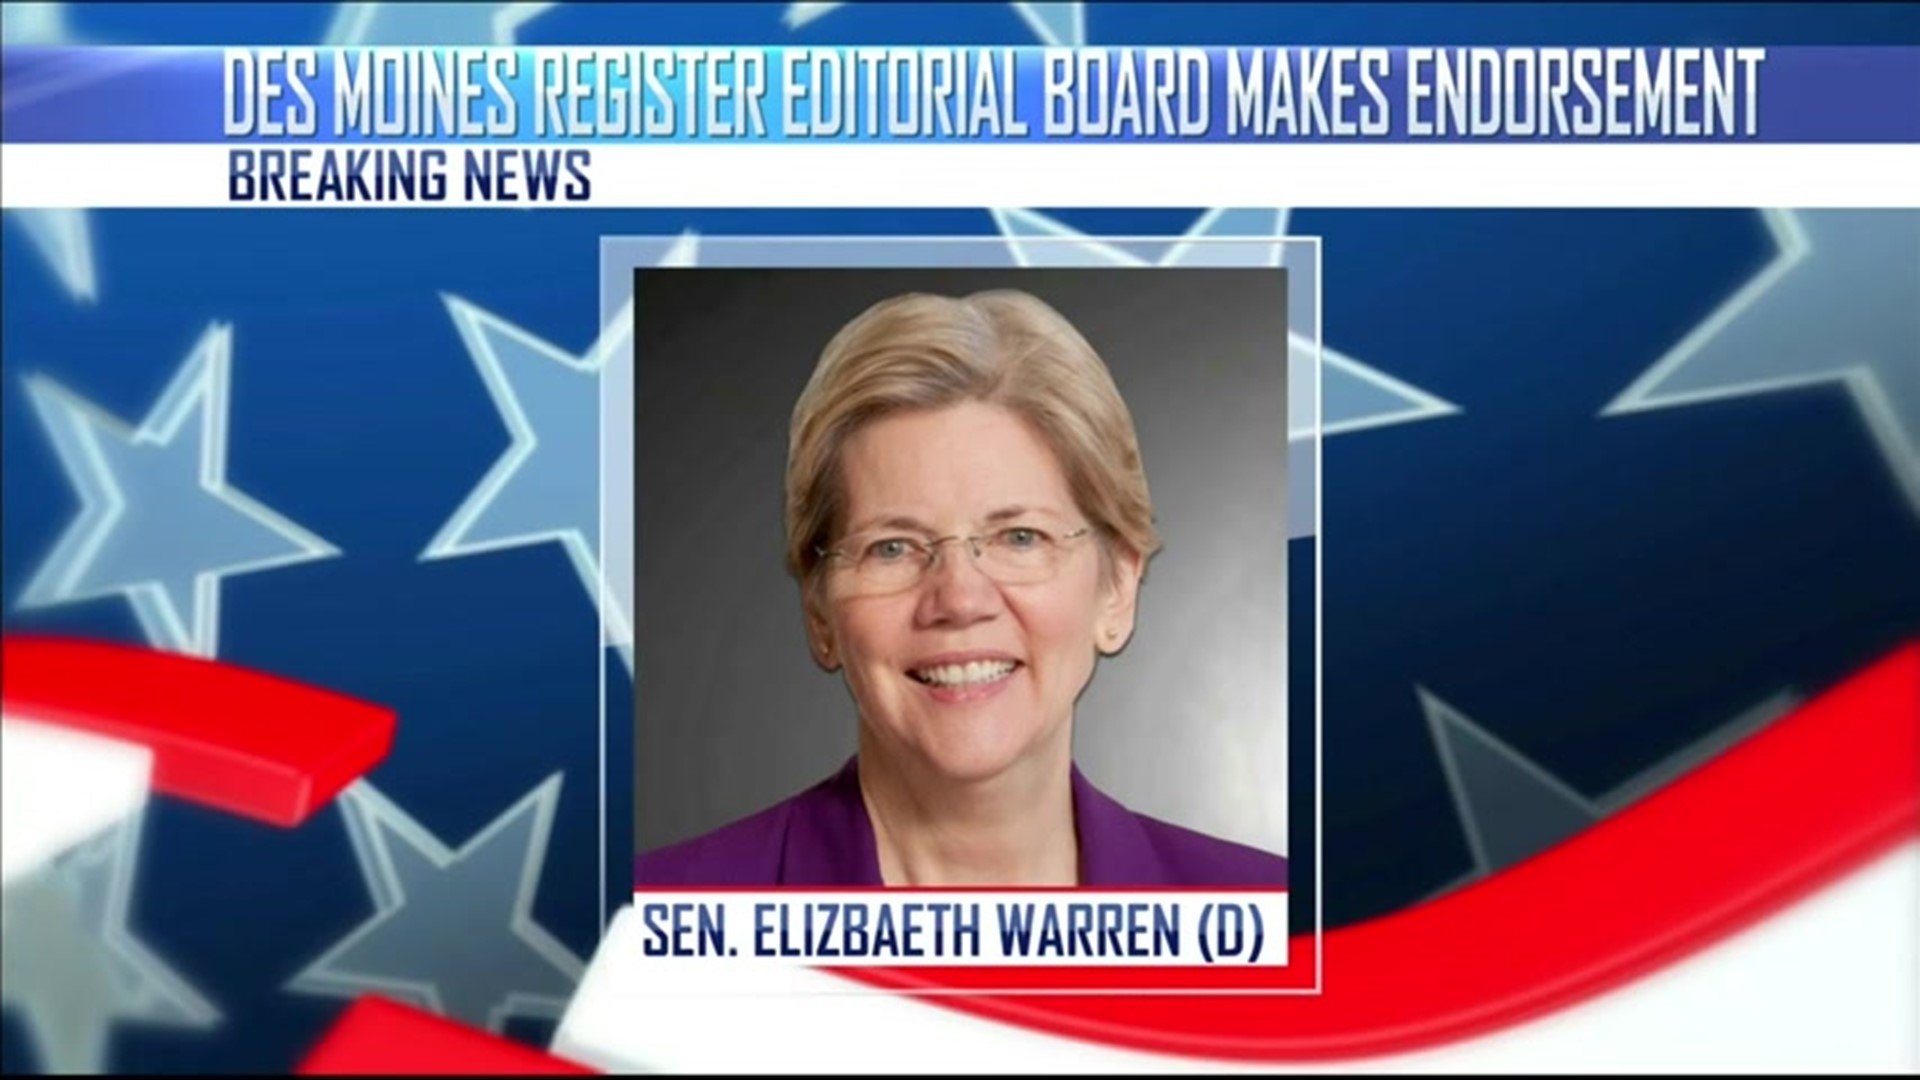 Register endorses Warren